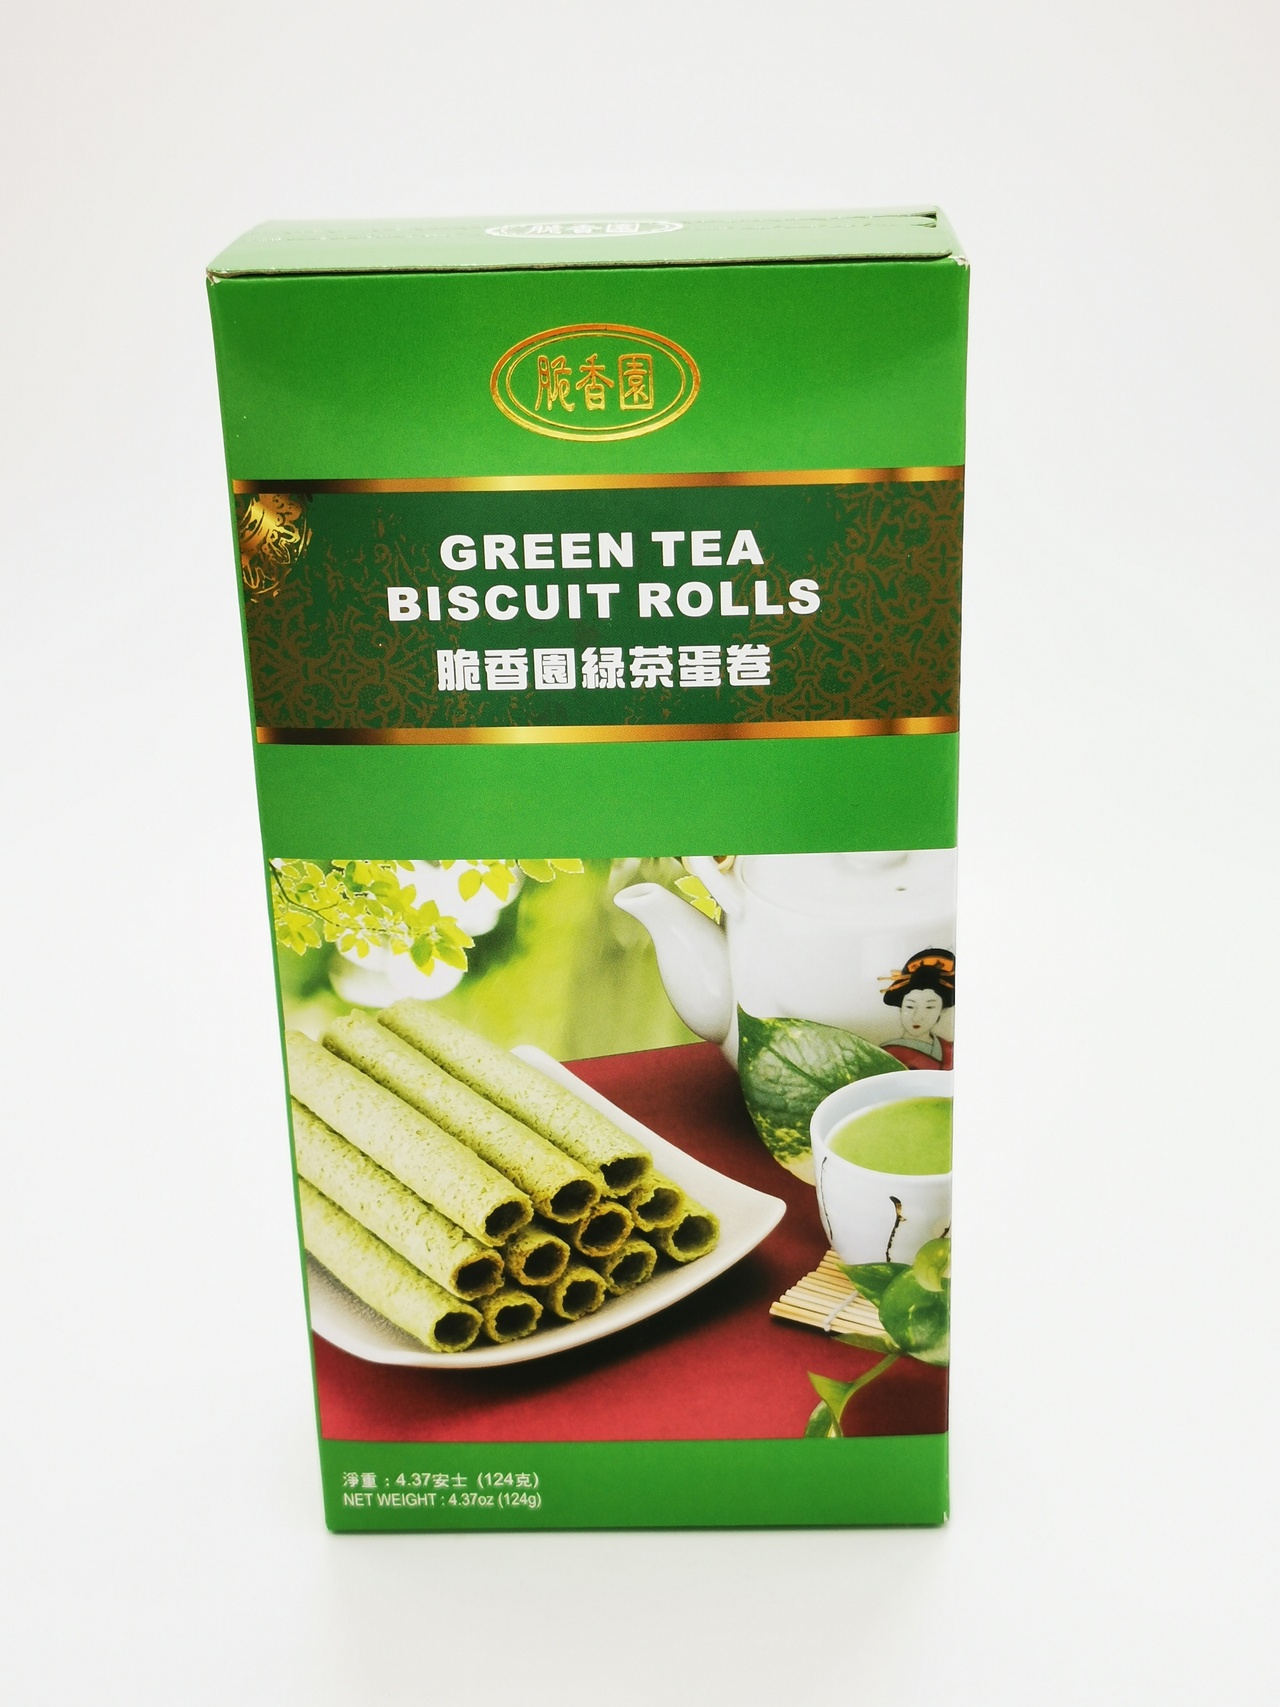 Green Tea Biscuit Rolls CXY 124g